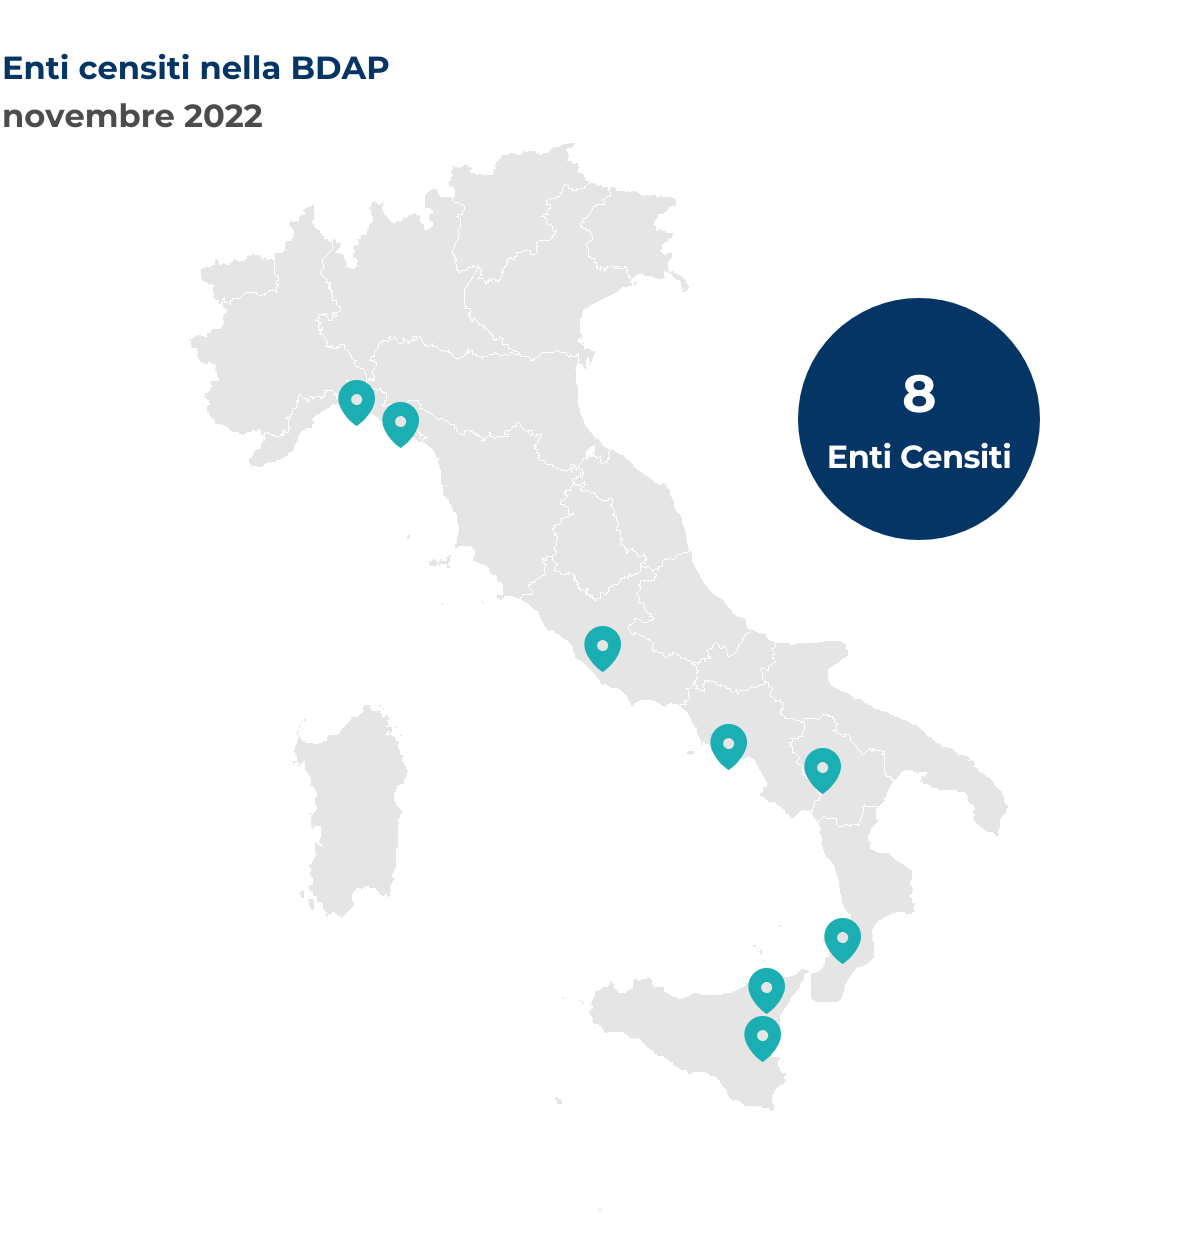 Mappa dell'Italia che mostra la localizzazione degli enti censiti nella BDAP. Nel mese di novembre 2022 sono stati censiti 8 nuovi enti così distribuiti per regione: Basilicata un ente; Calabria un ente; Campania un ente; Lazio un ente; Liguria due enti; Sicilia due enti.